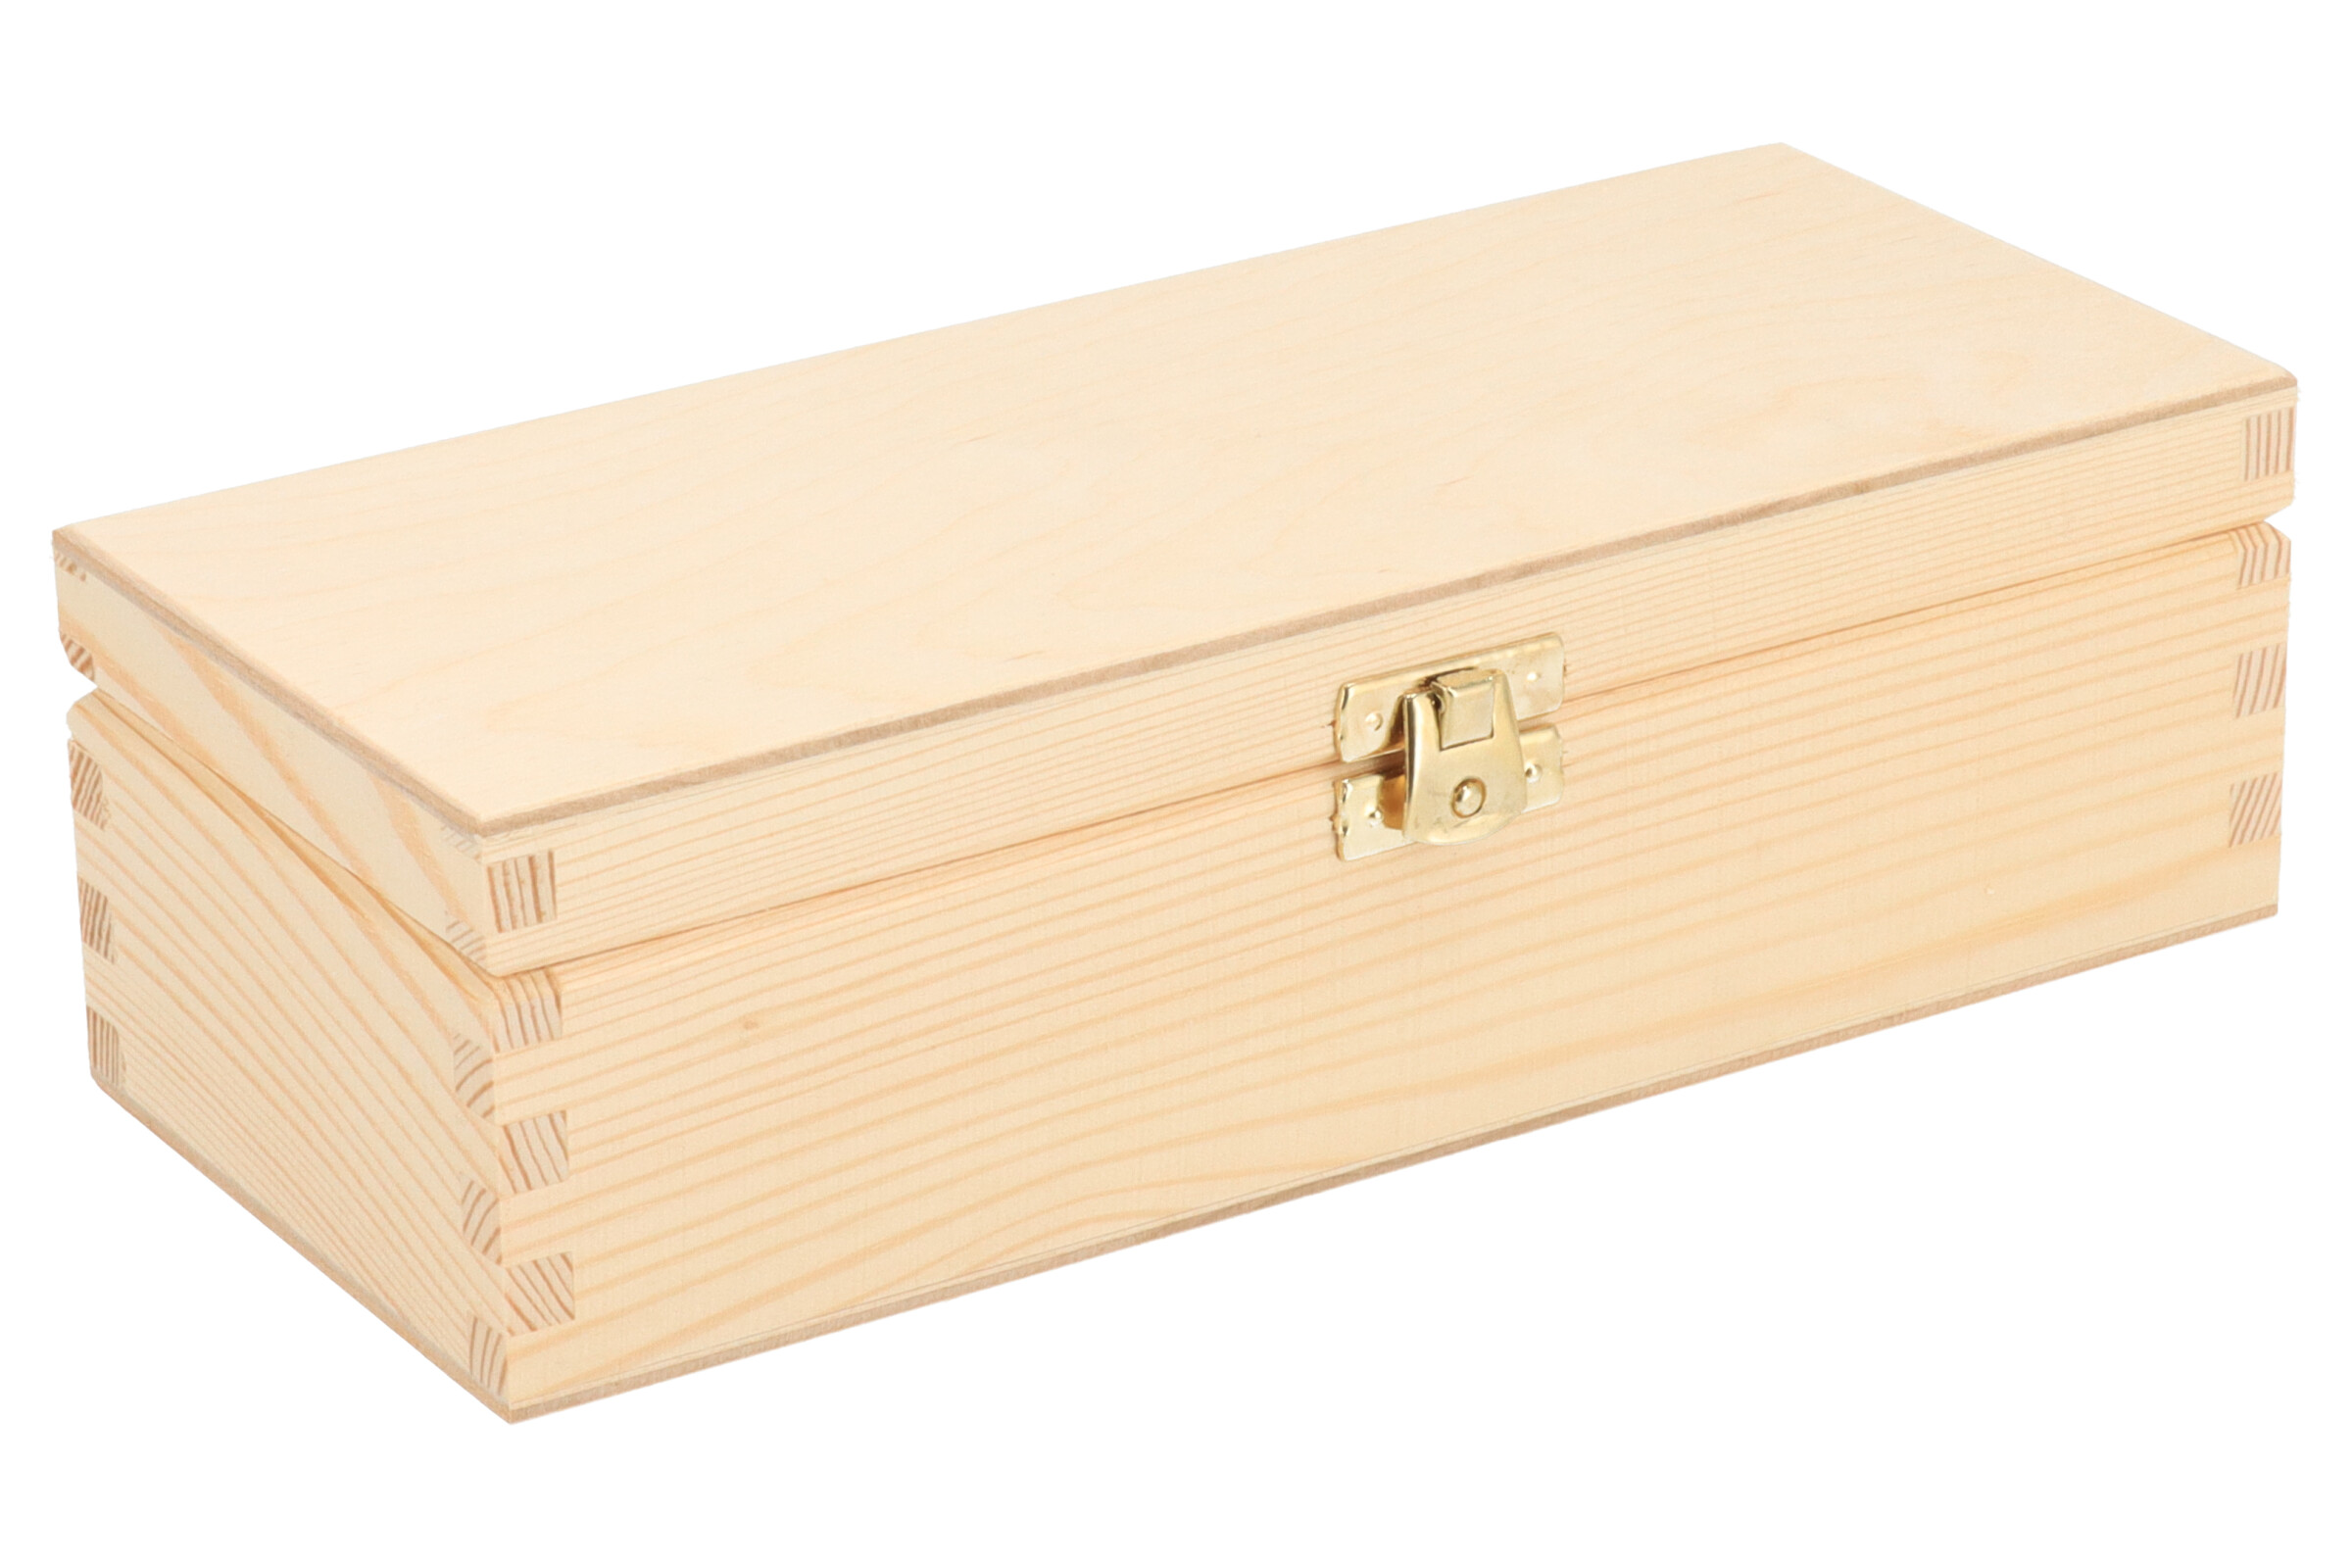 Dřevěná krabička I